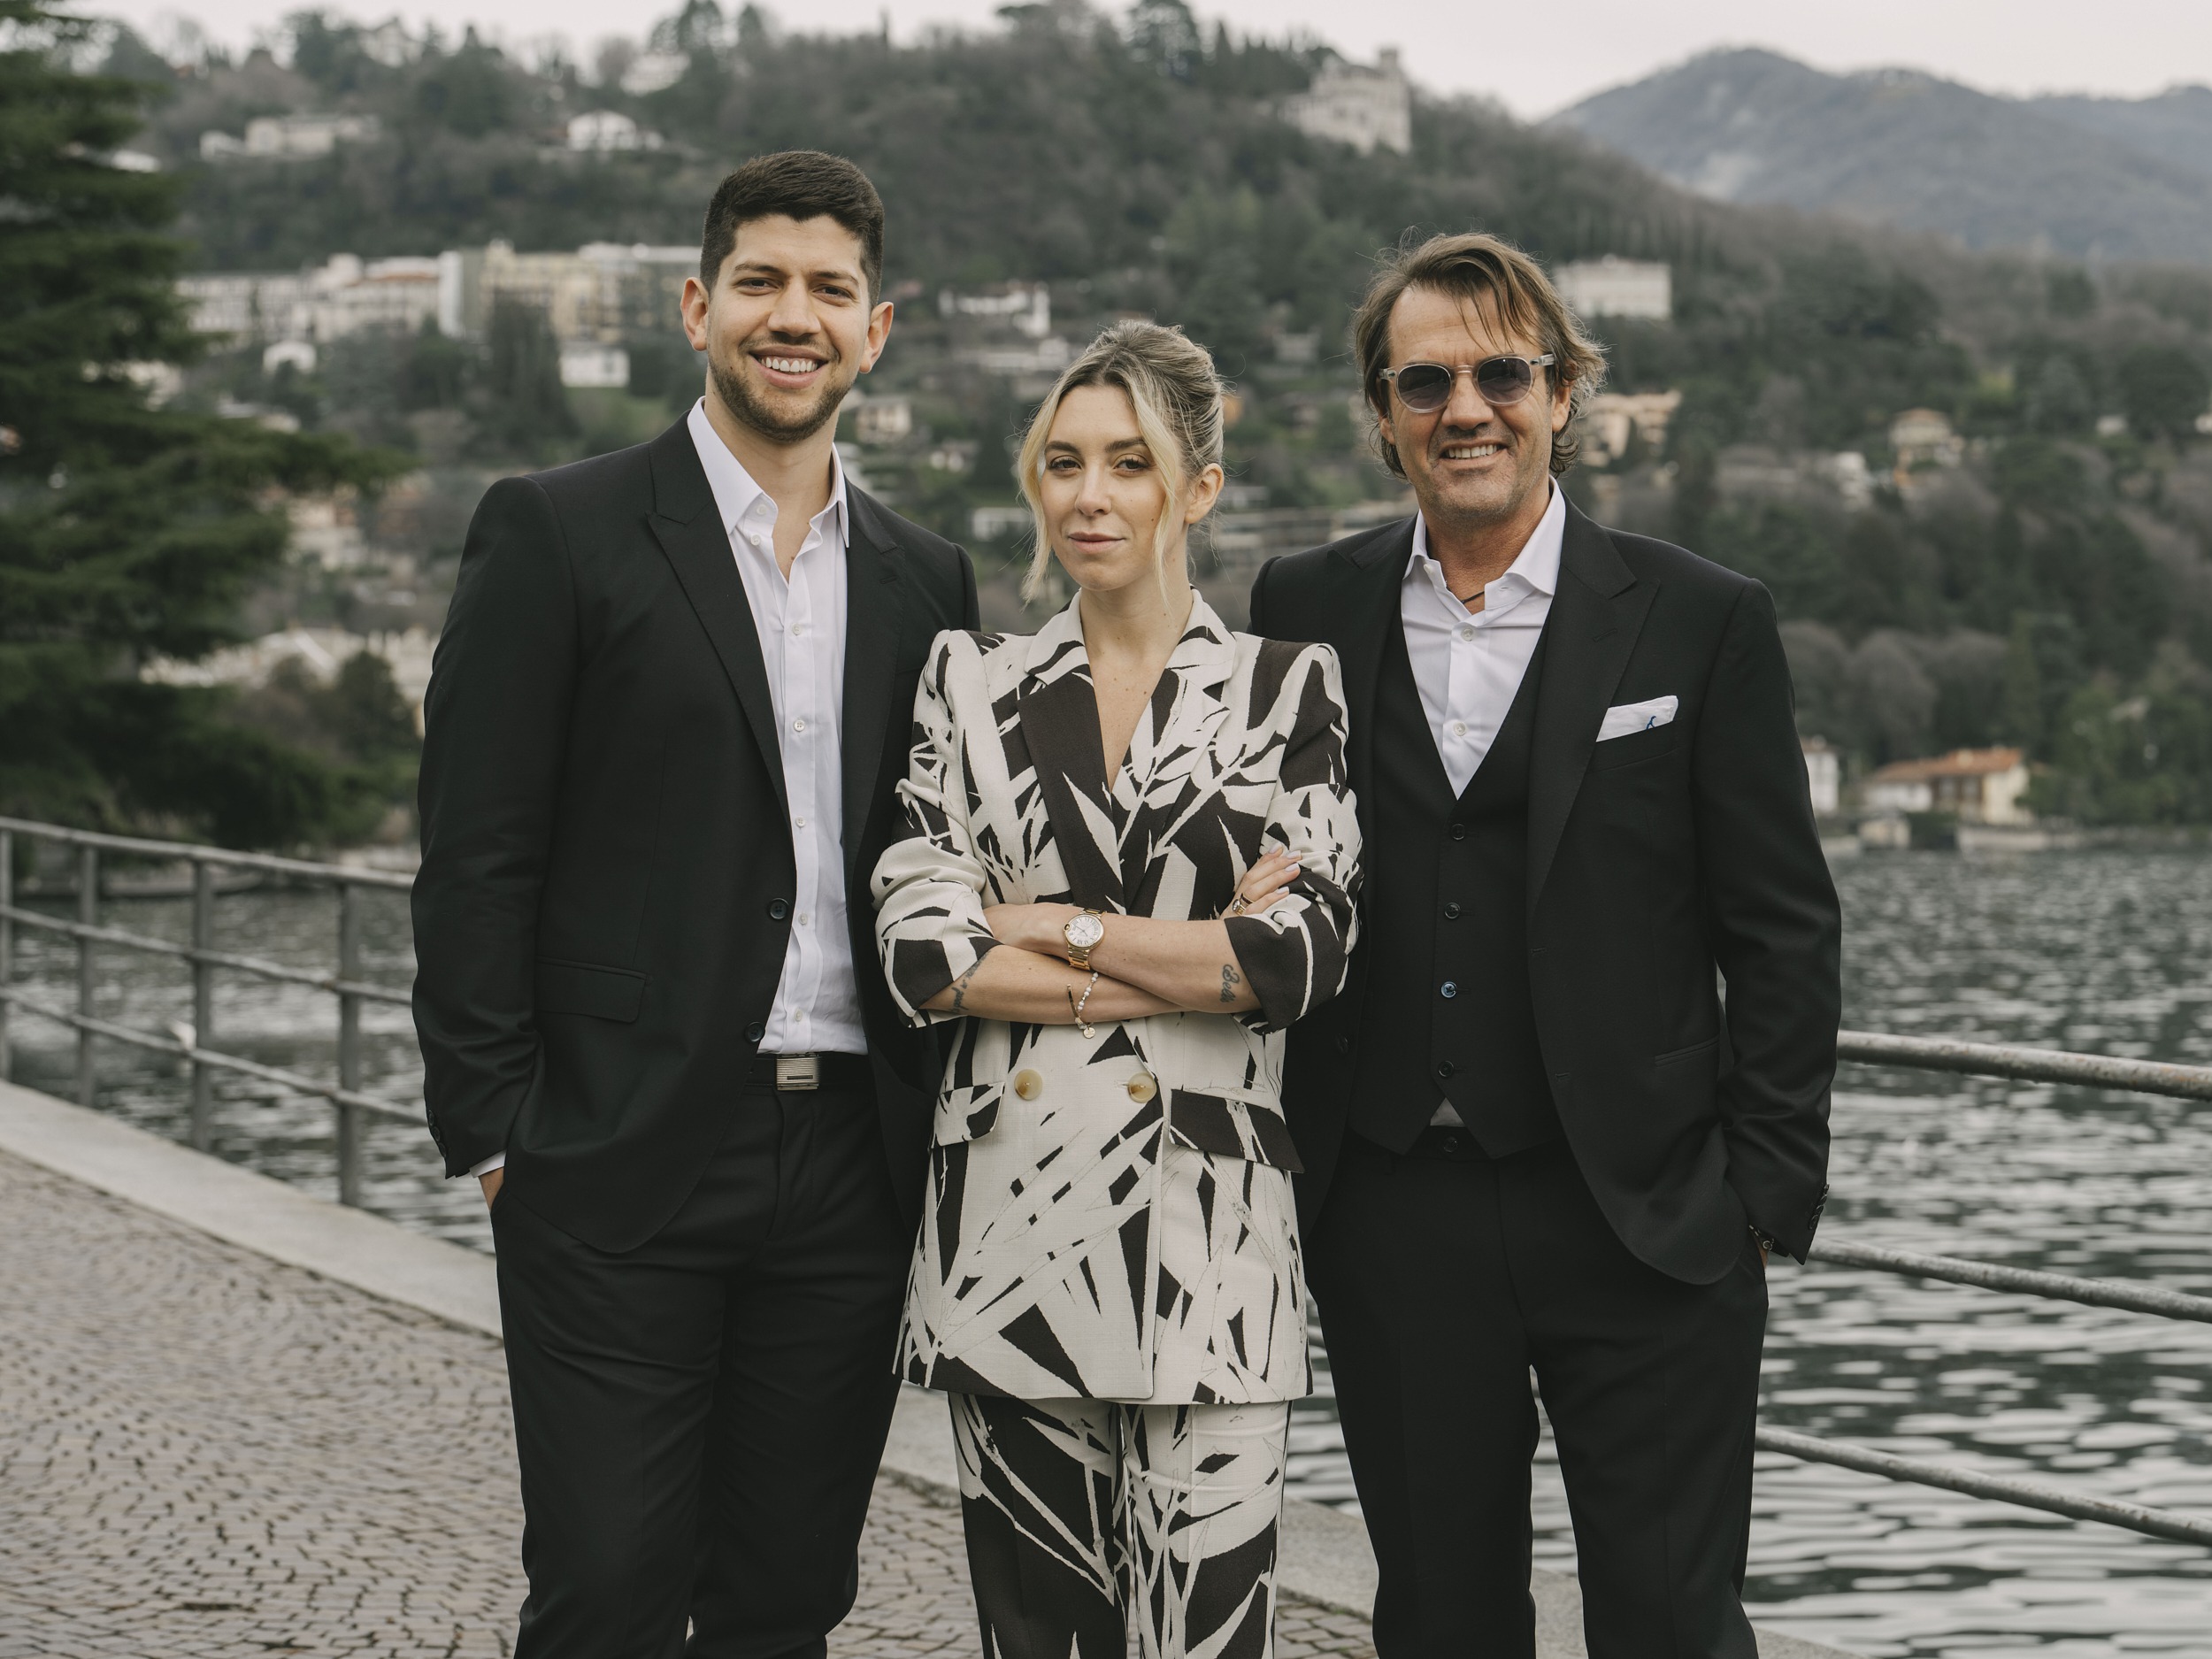 Mario Malavé, Victoire Cogevina Reynal and Stefano Verga in Lake Como.